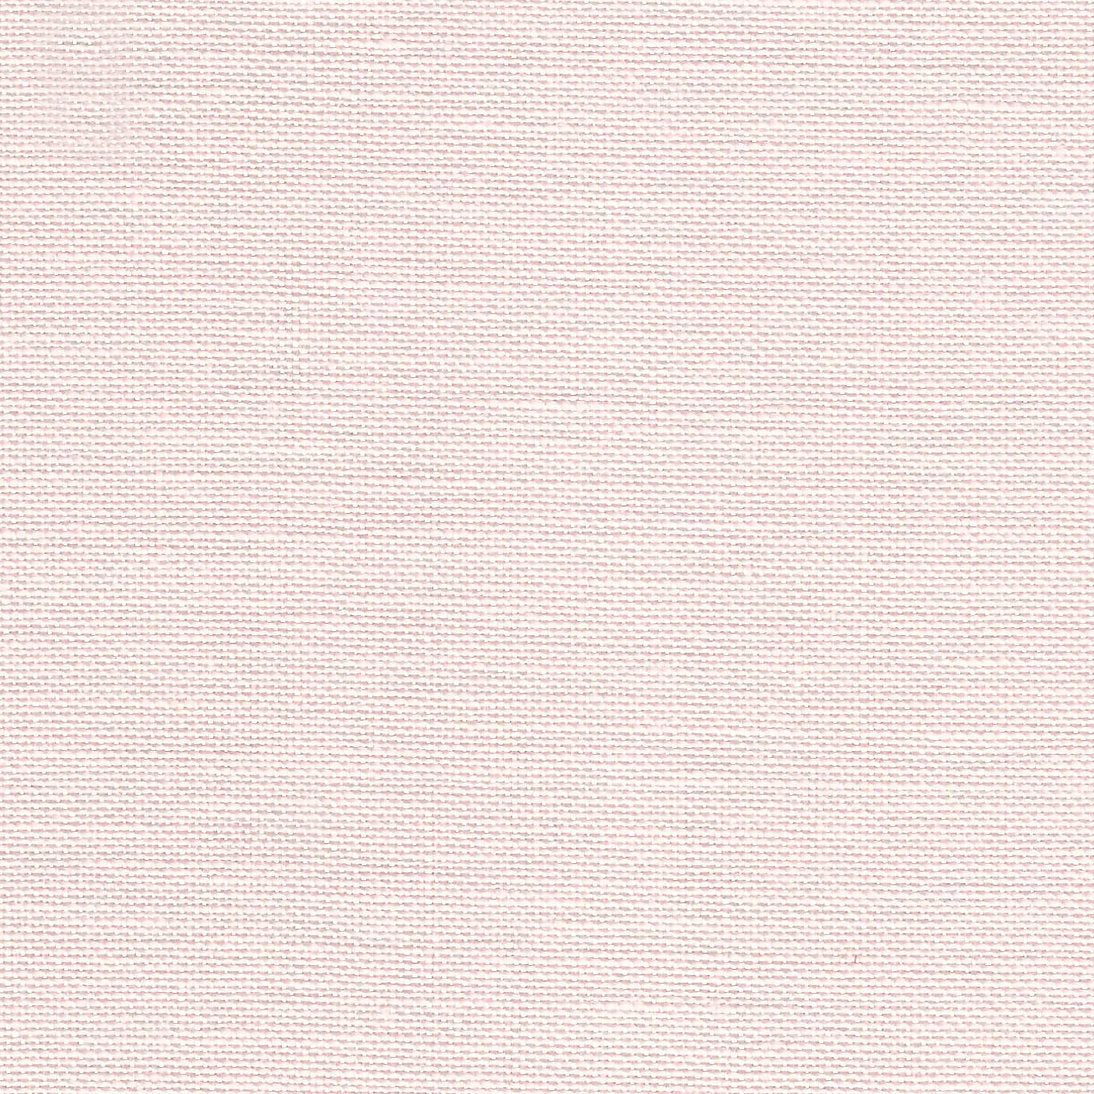 Tissu Belfast 32 ct. Rose Blush de ZWEIGART 3609/4115 - 100% Lin fin pour broderie délicate